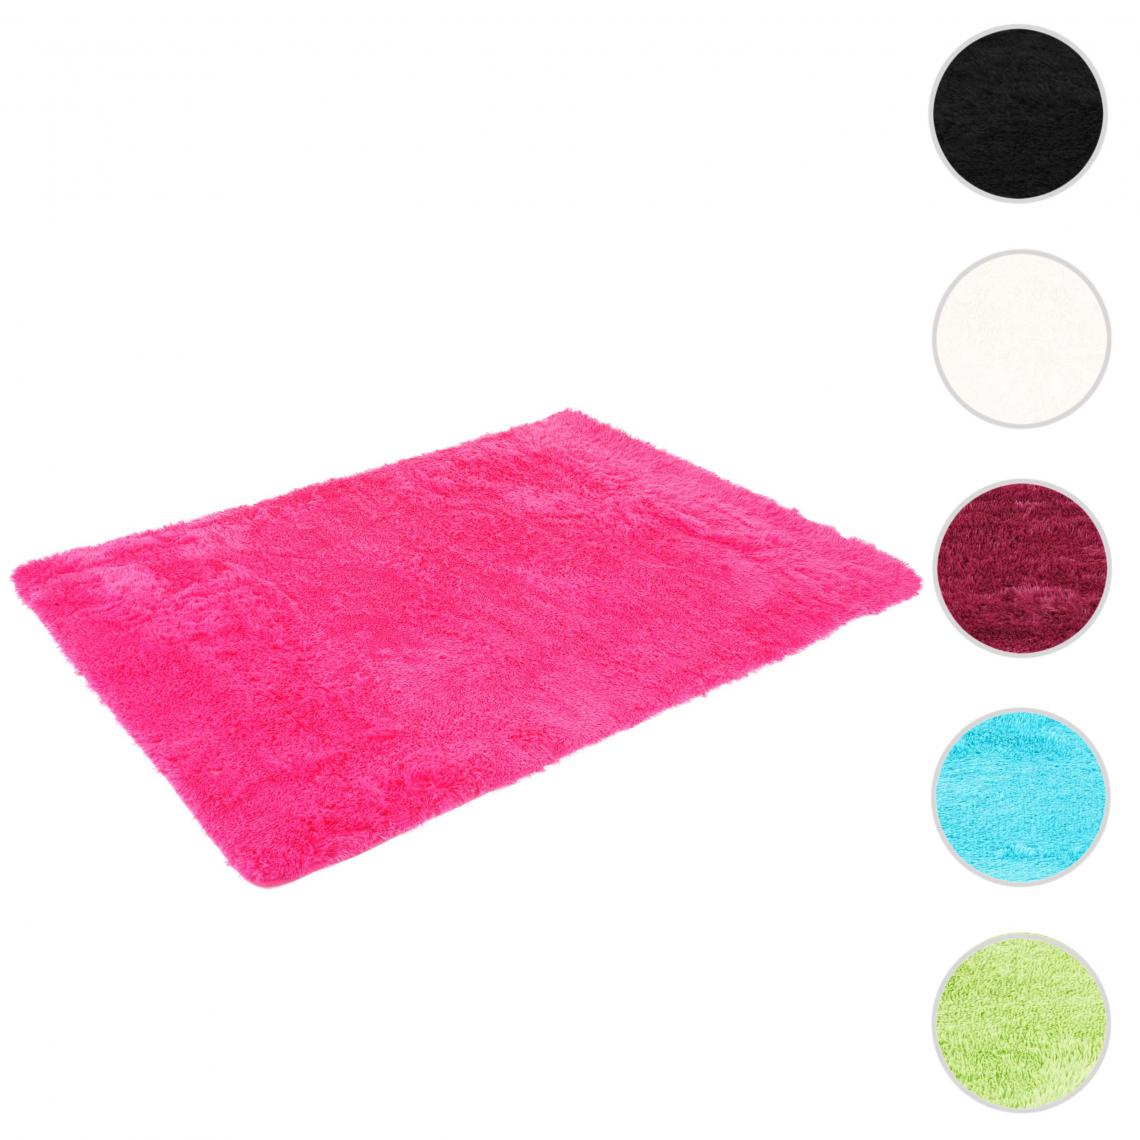 Mendler - Tapis HWC-F69, shaggy, tapis de course à poils longs, tissu/textile doux et moelleux 160x120cm ~ pink - Tapis